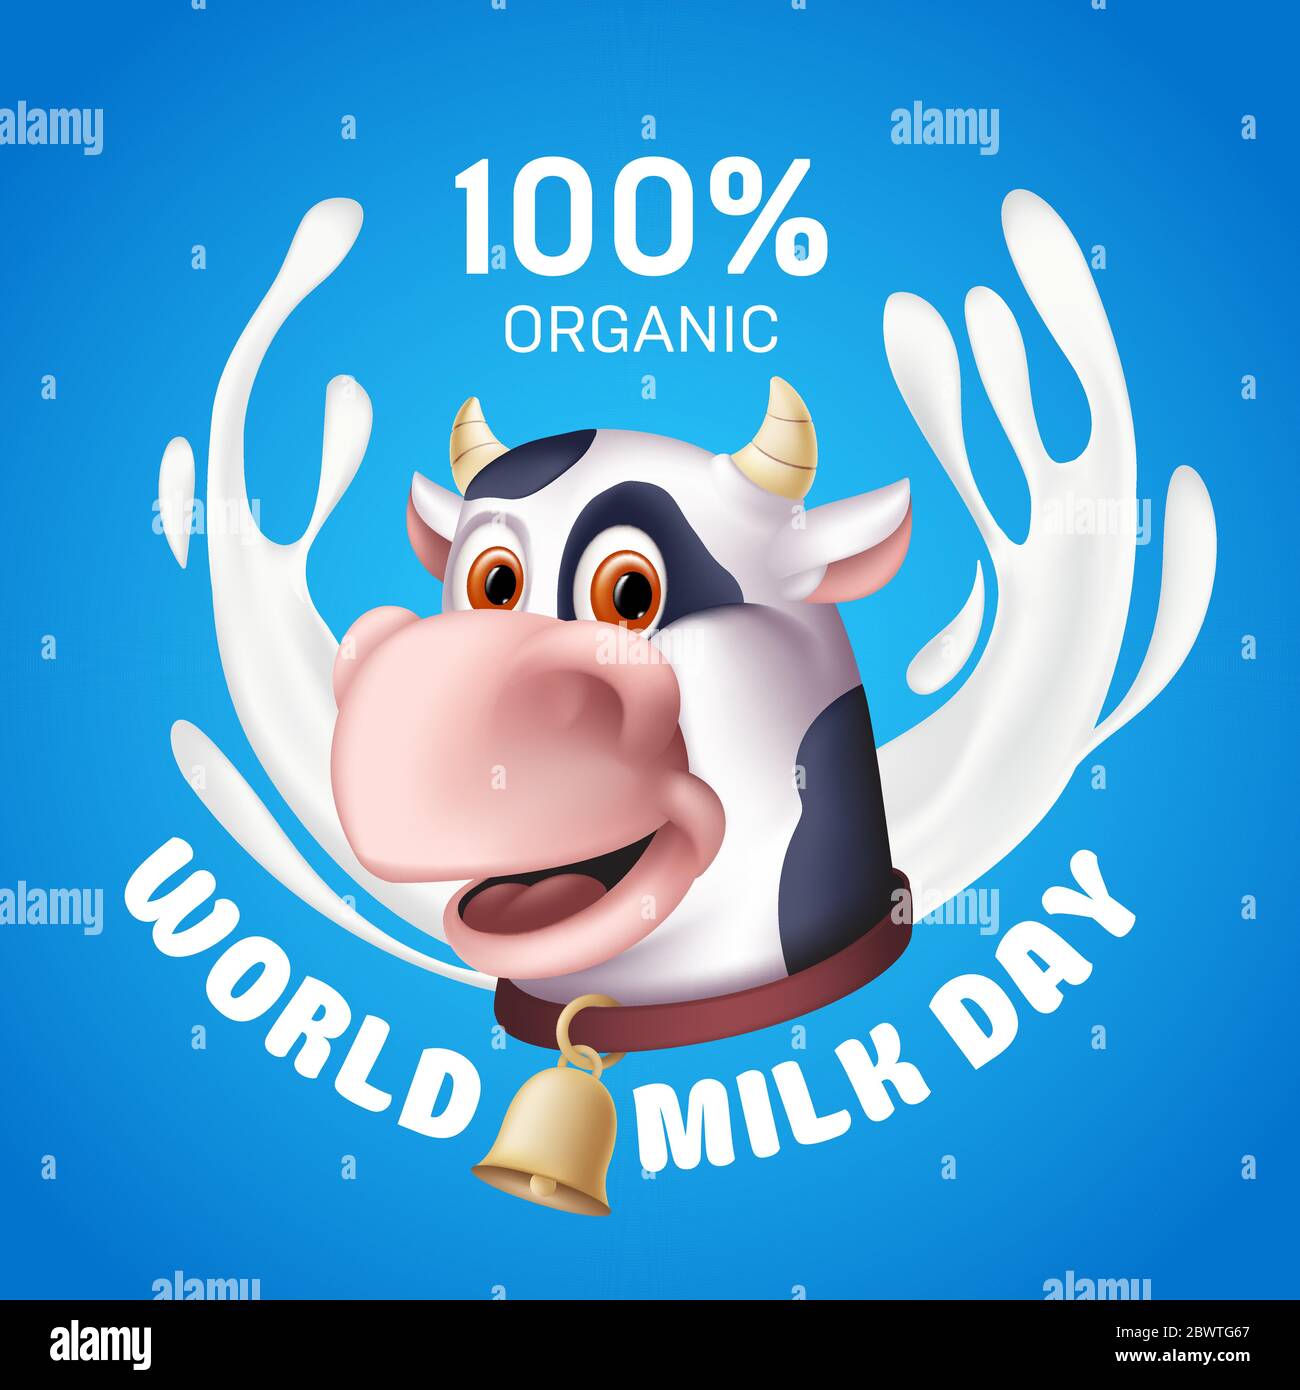 Welt Milch Tag Inschrift mit weißen Joghurt Spritzer und die lächelnde Kuh Cartoon-Figur Kopf. Vektorgrafik eines gehörnten Haustieres mit Stock Vektor